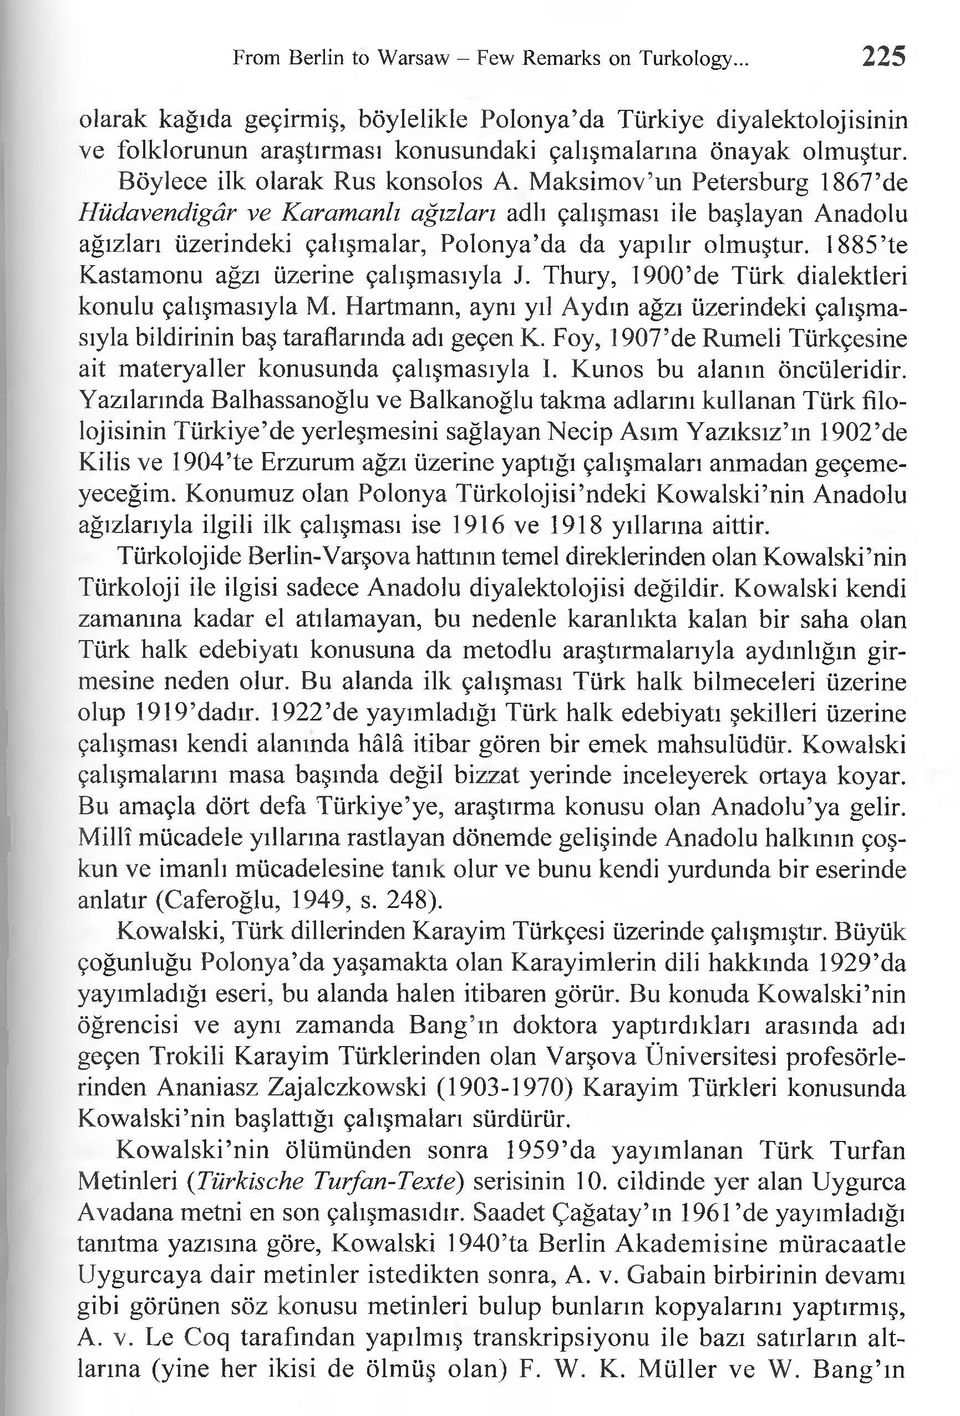 1885 te Kastamonu ağzı üzerine çalışmasıyla J. Thury, 1900 de Türk dialektleri konulu çalışmasıyla M. Hartmann, aynı yıl Aydın ağzı üzerindeki çalışmasıyla bildirinin baş taraflarında adı geçen K.